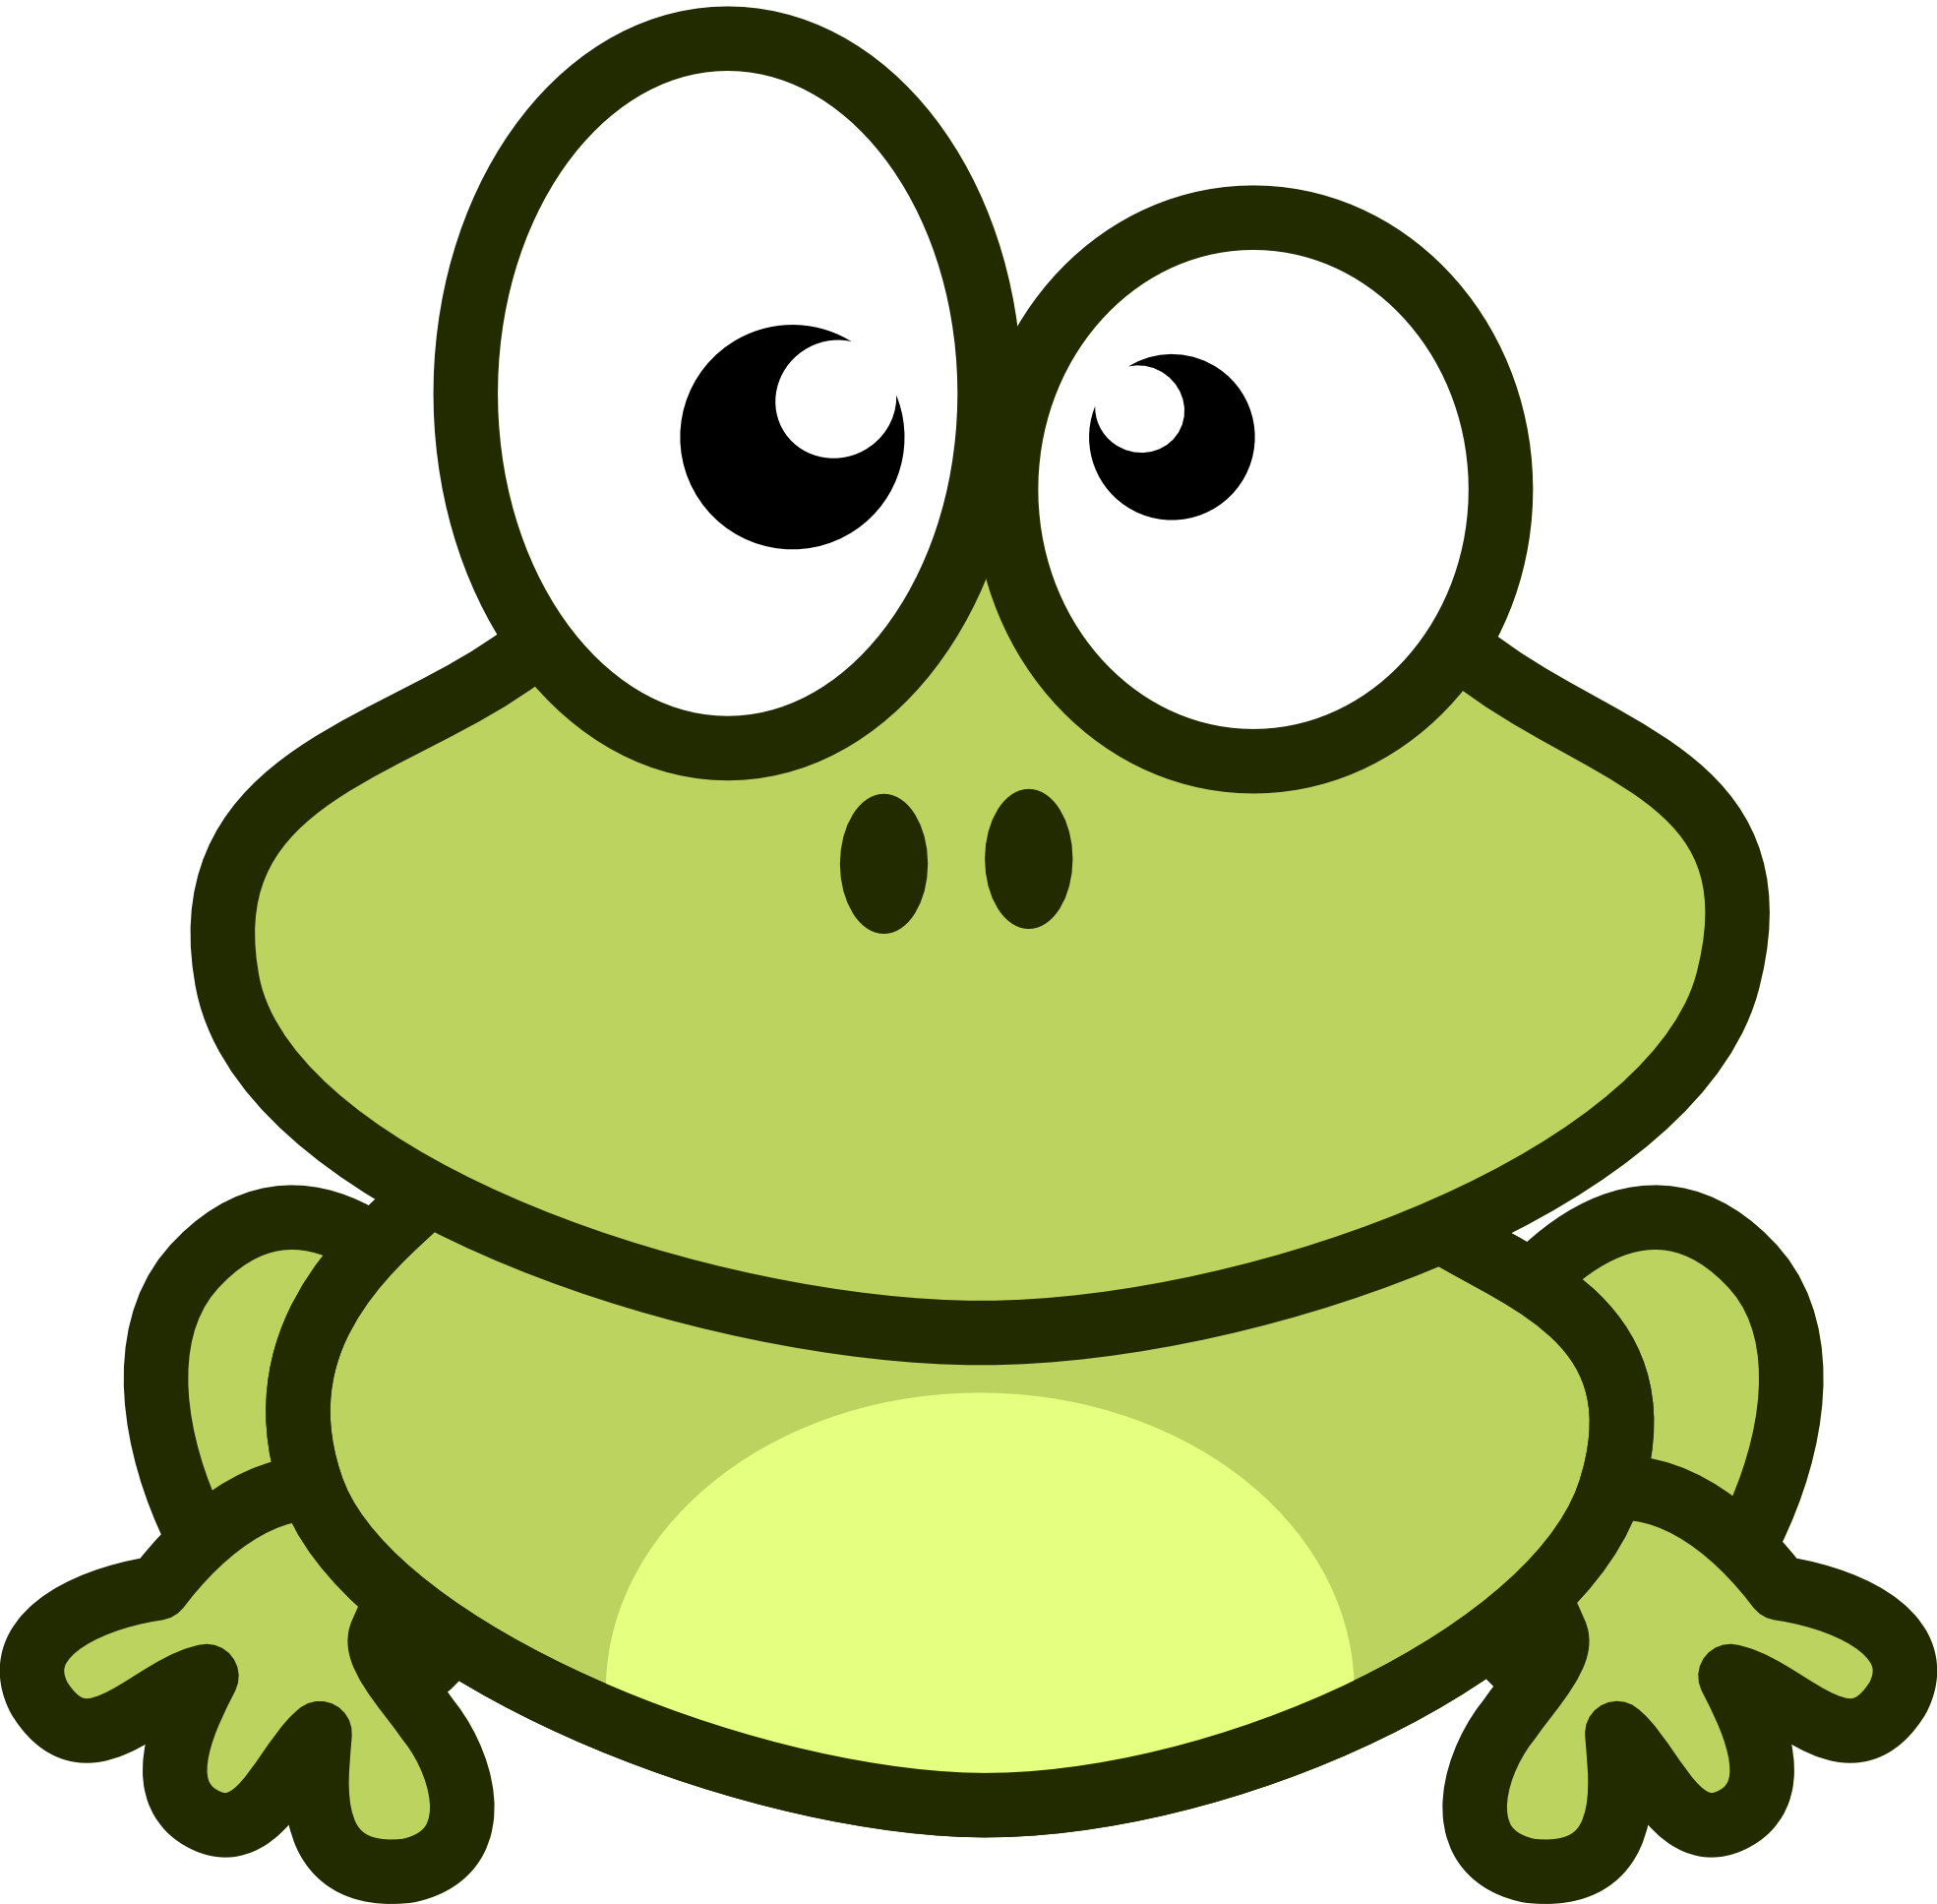 Frog vector clipart.